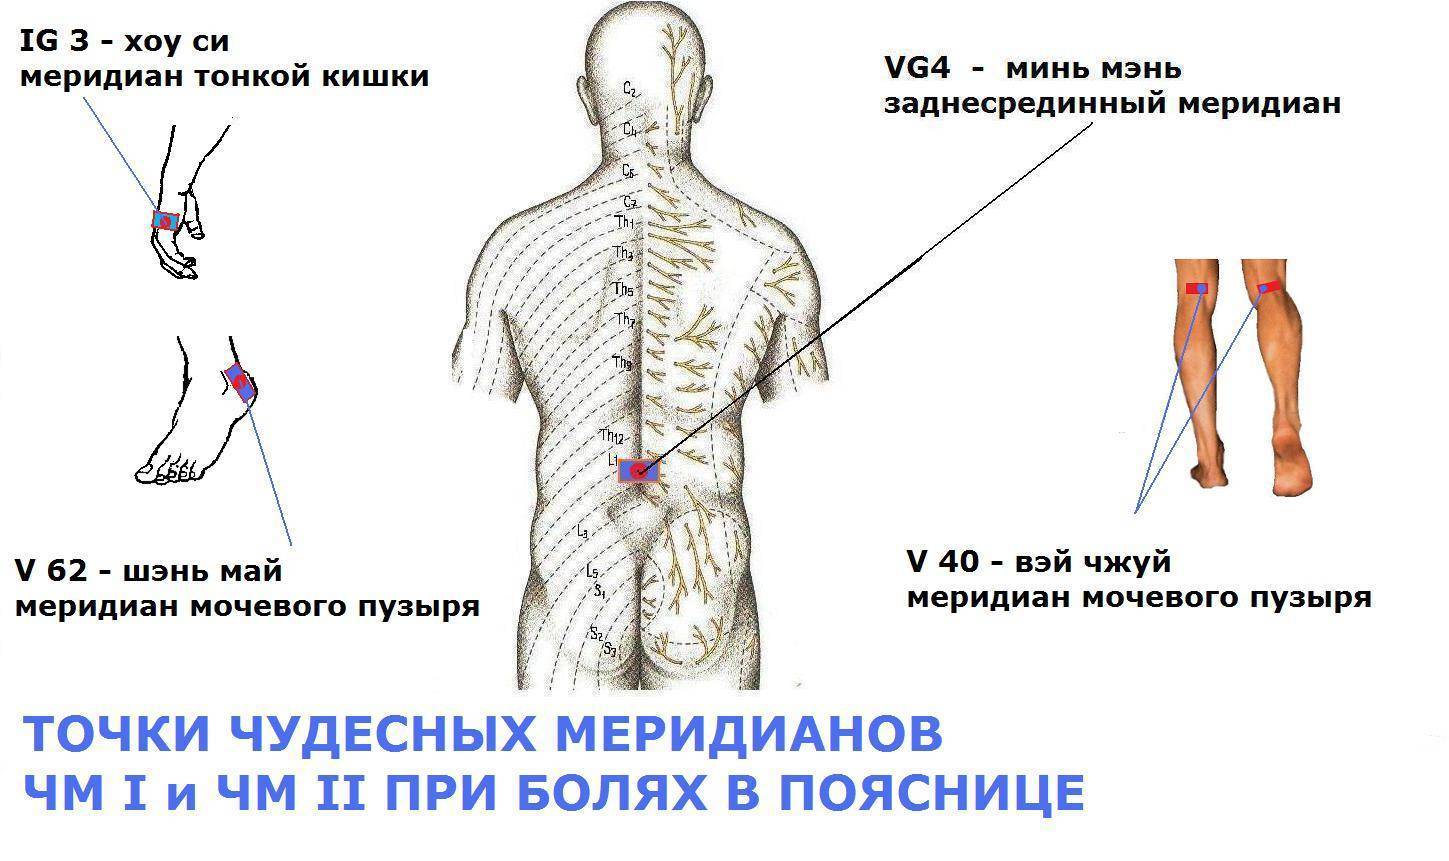 Массаж спины и поясницы, причины болей в спине, рекомендации и противопоказания к процедуре. техника выполнения движений.